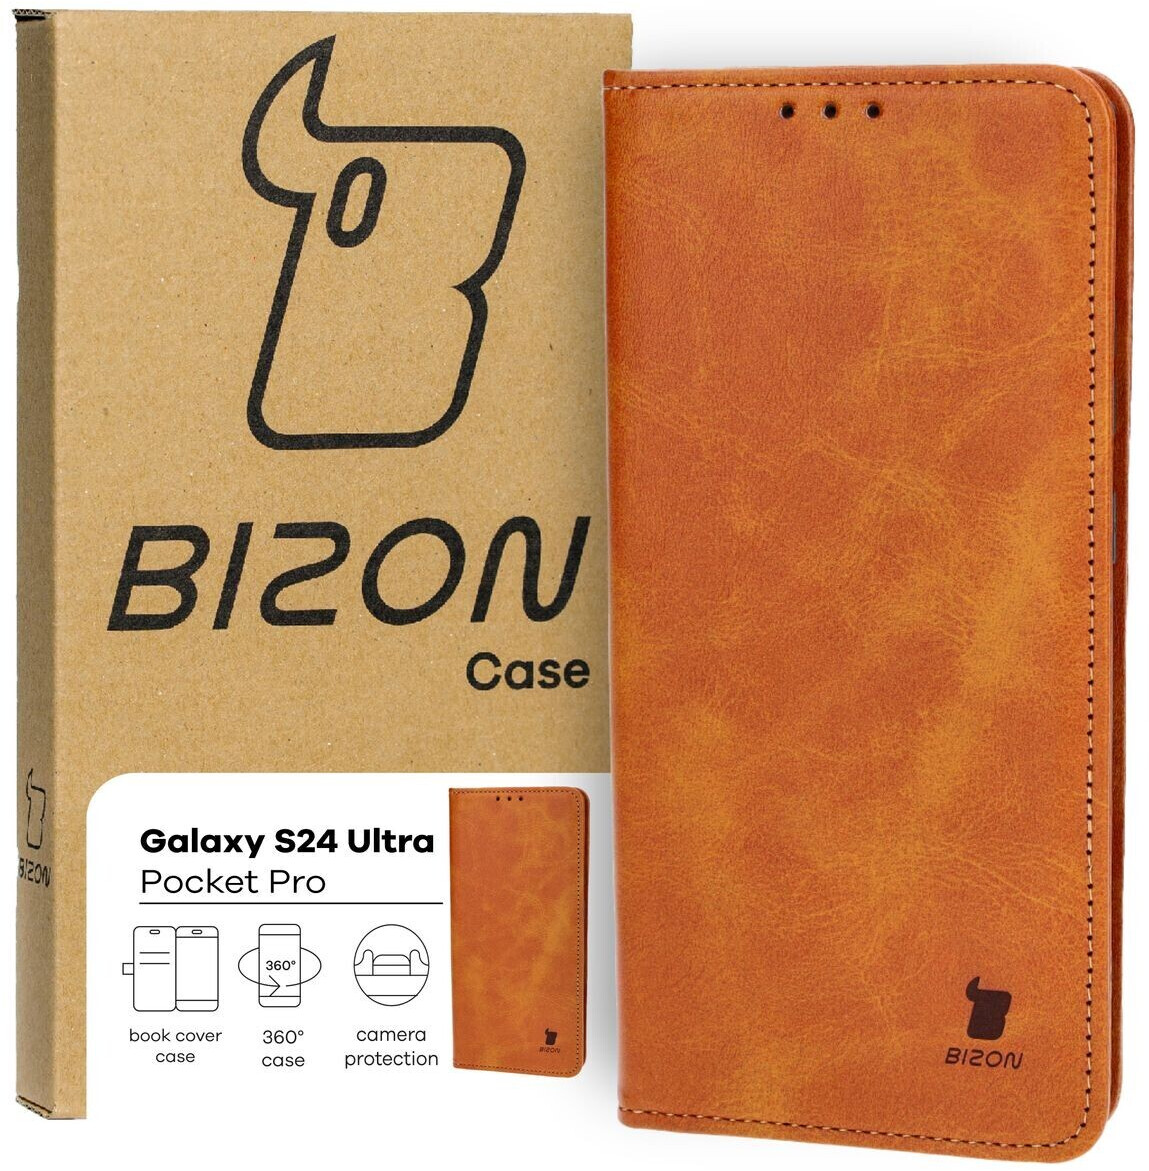 Bizon Schutzhülle für Galaxy S24 Ultra Case Pocket Pro Braun ab 14